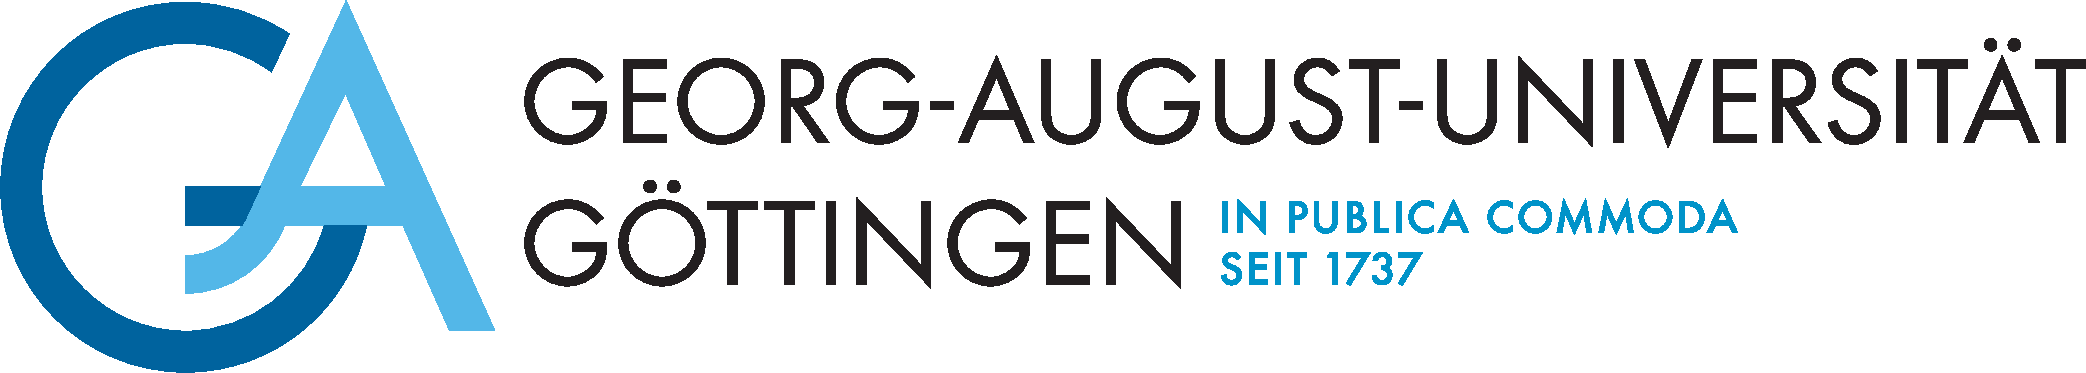 goettingen_logo.png